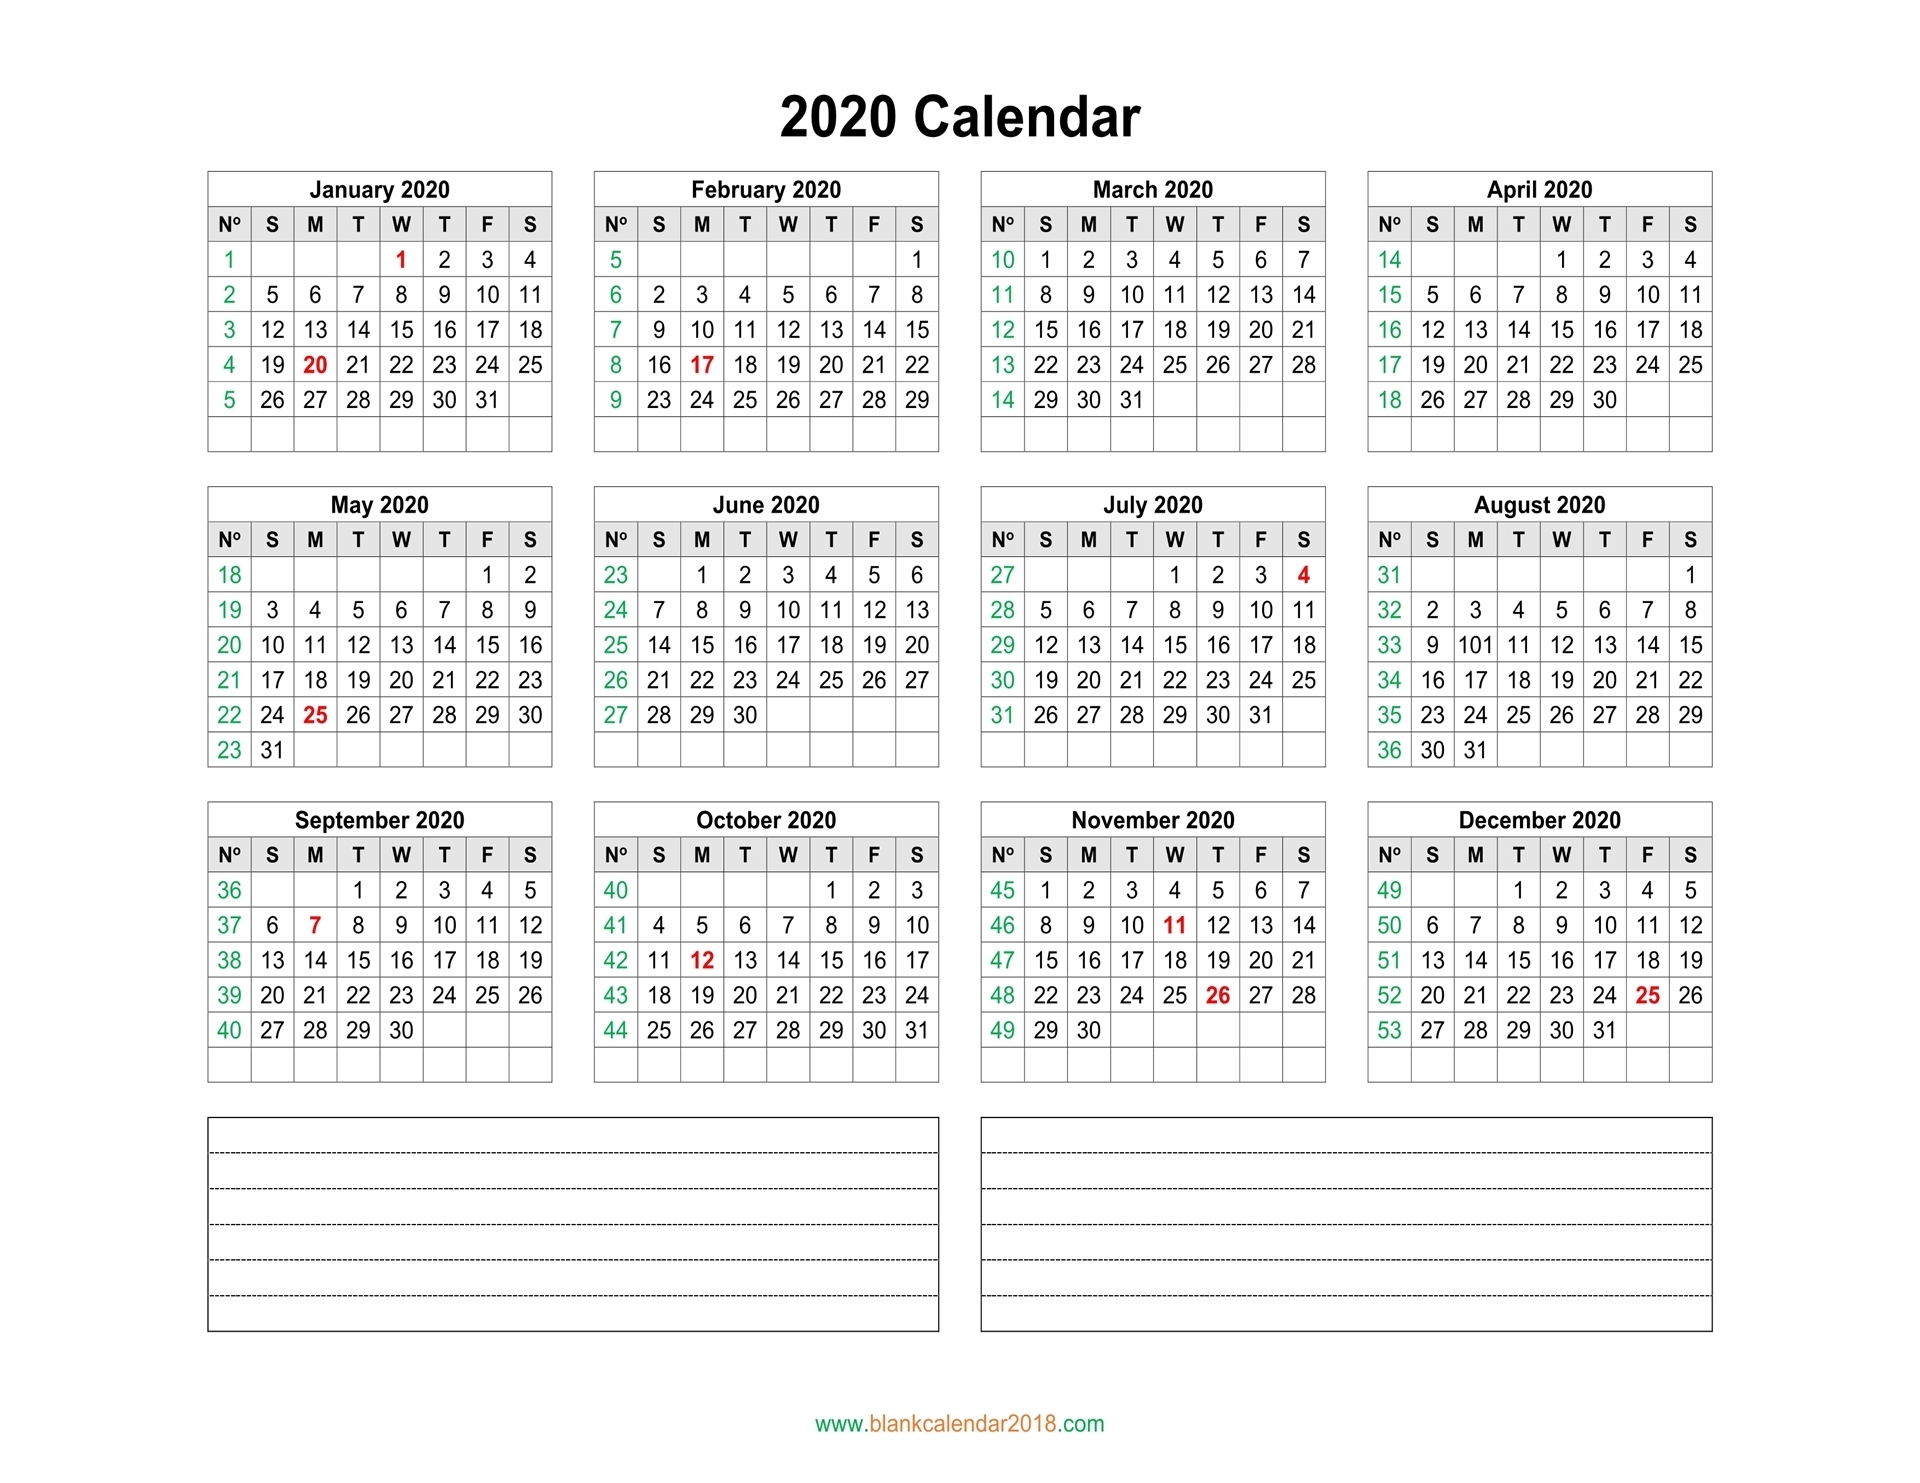 Blank Calendar 2020 Exceptional Blank Outlook Calendar 2020 With Week Numbers